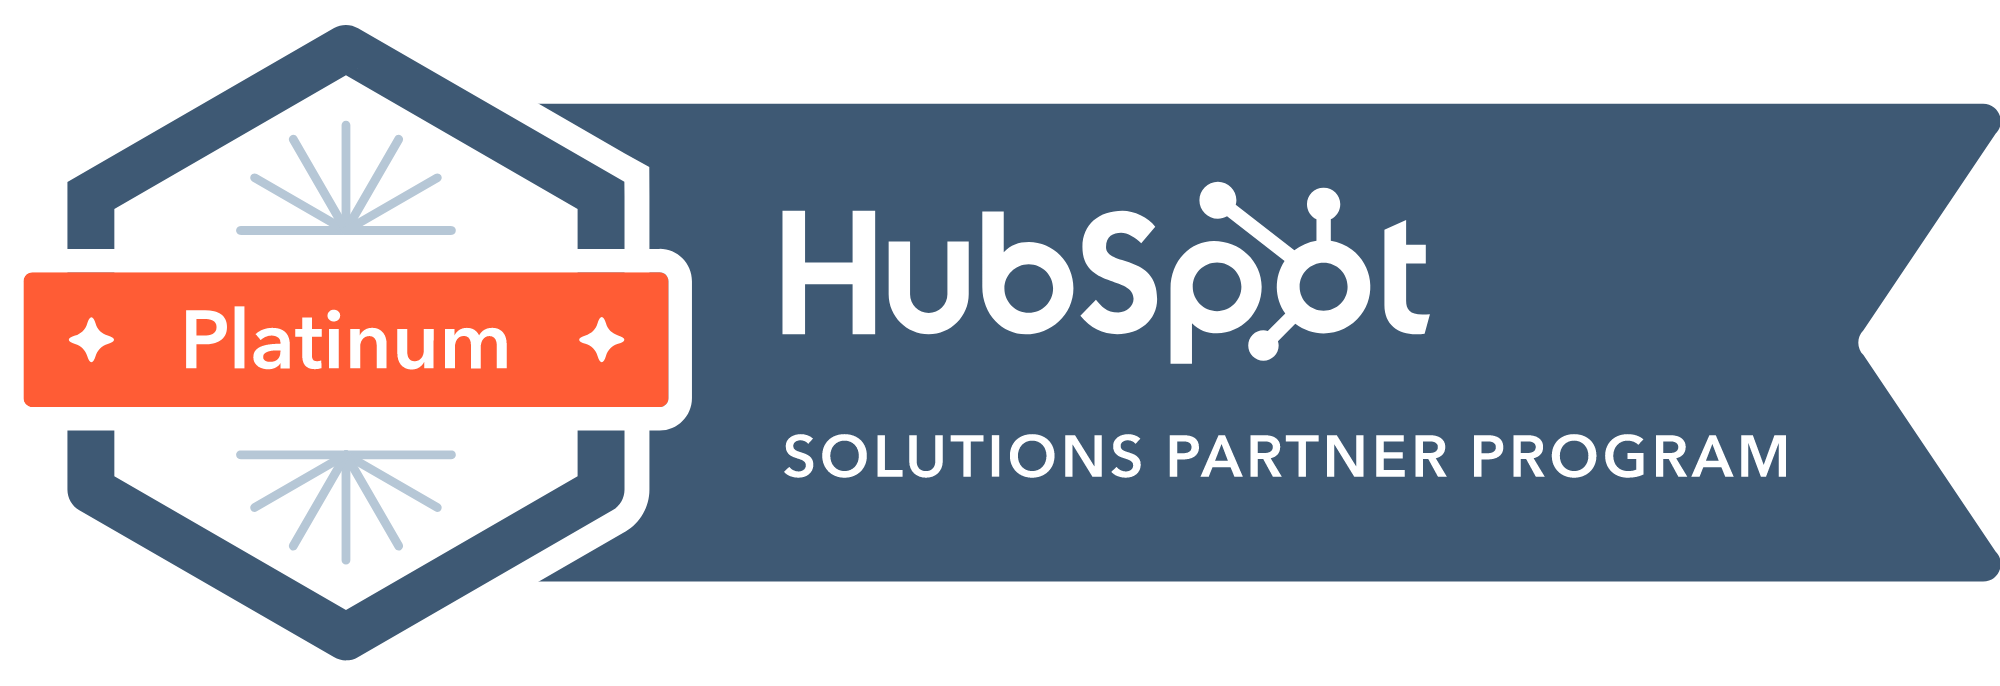 Wir sind zertifizierter HubSpot Partner.